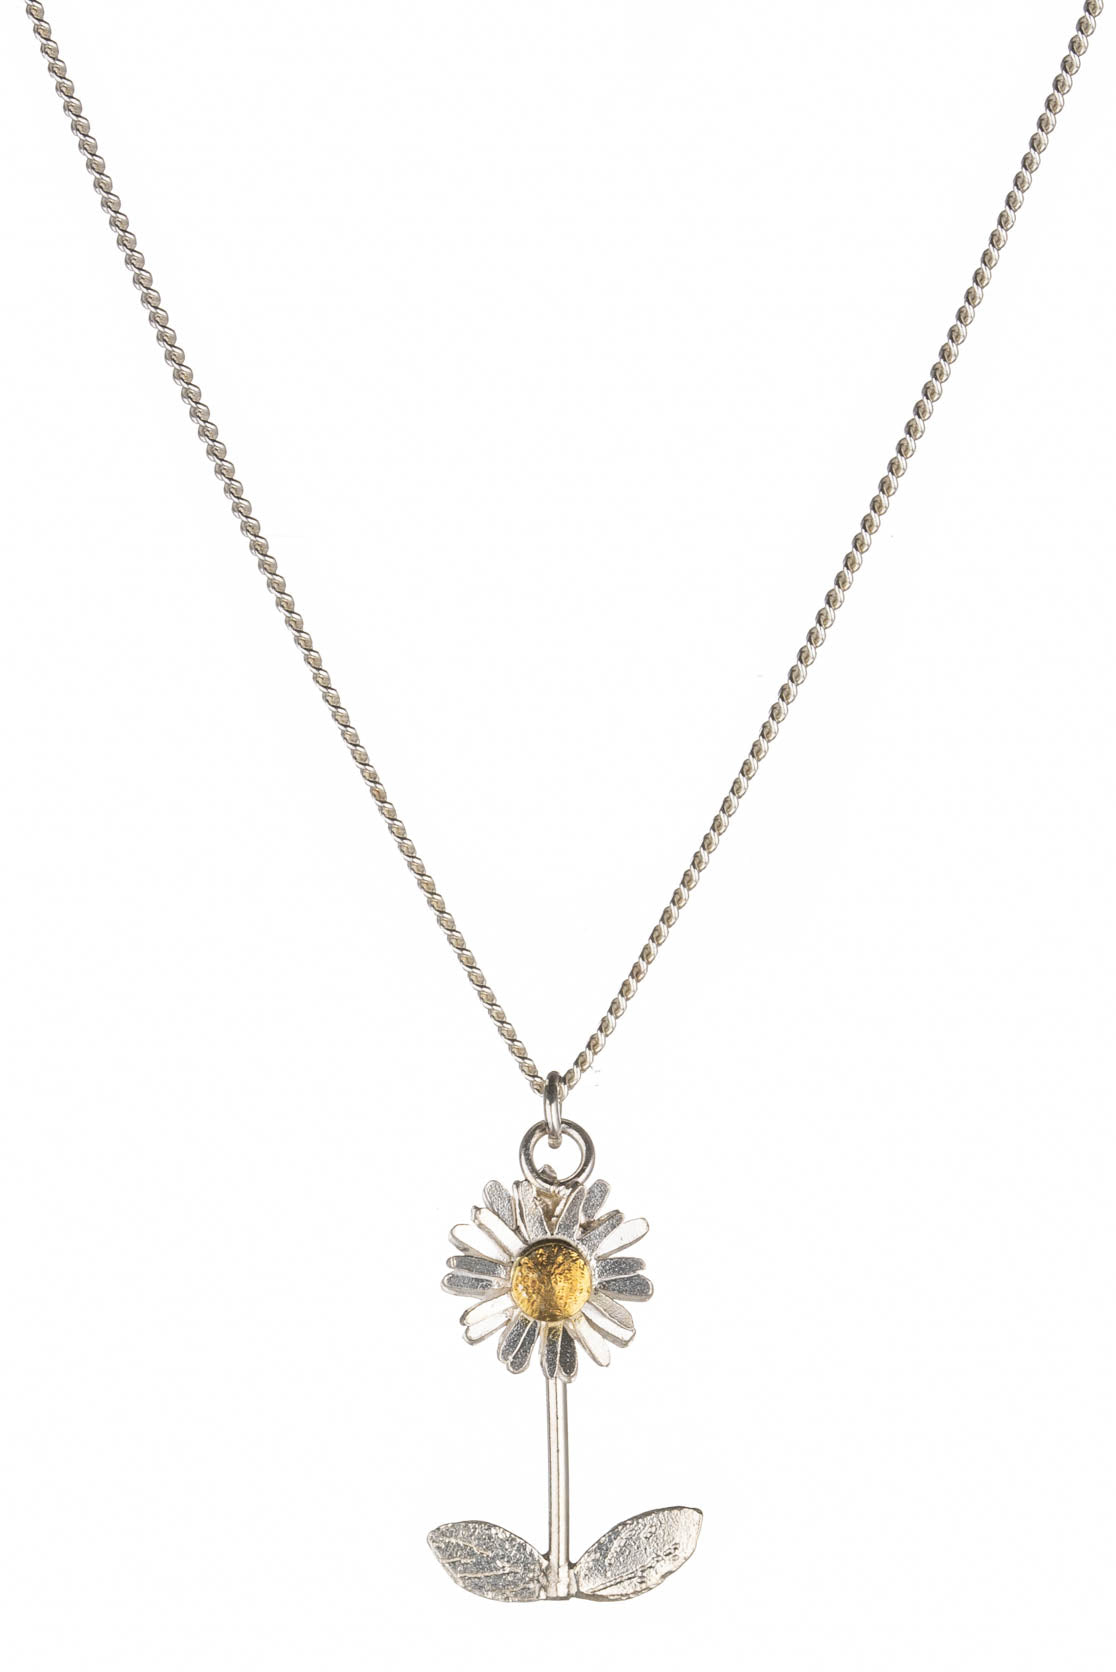 Lilylin Designs White Gerbera Daisy Pendant on Gold-tone Chain